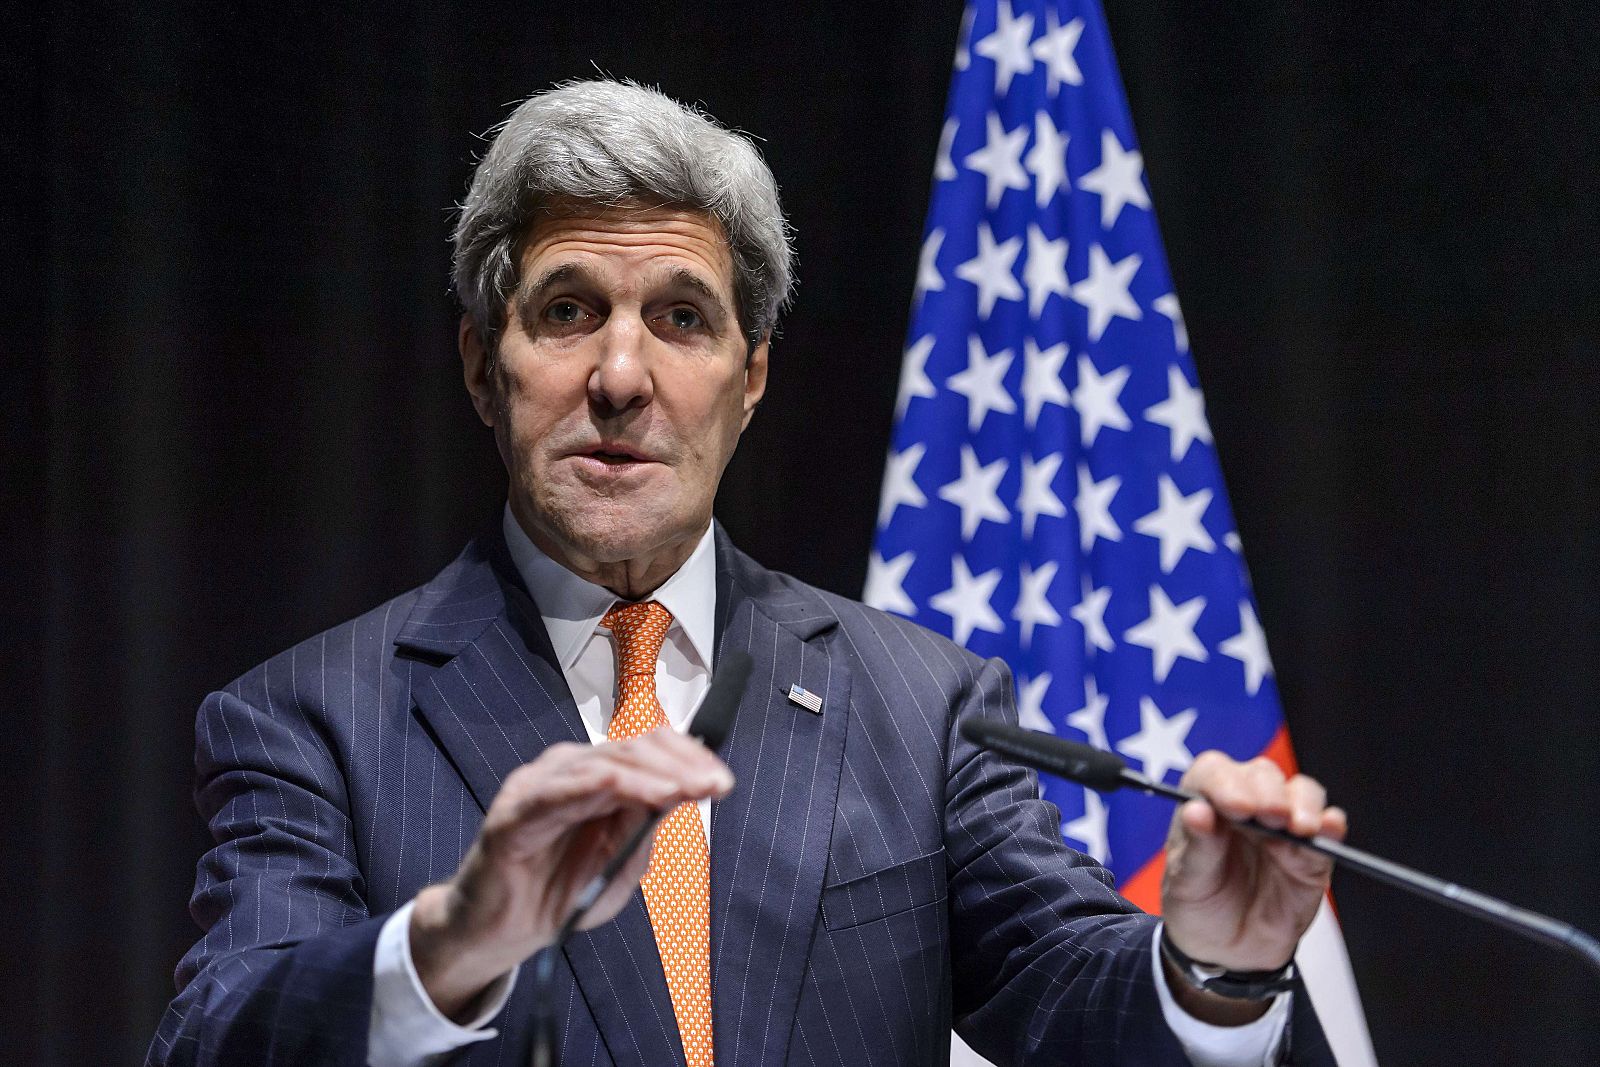 El jefe de la diplomacia de Estados Unidos, John Kerry, durante su discurso en Suiza.